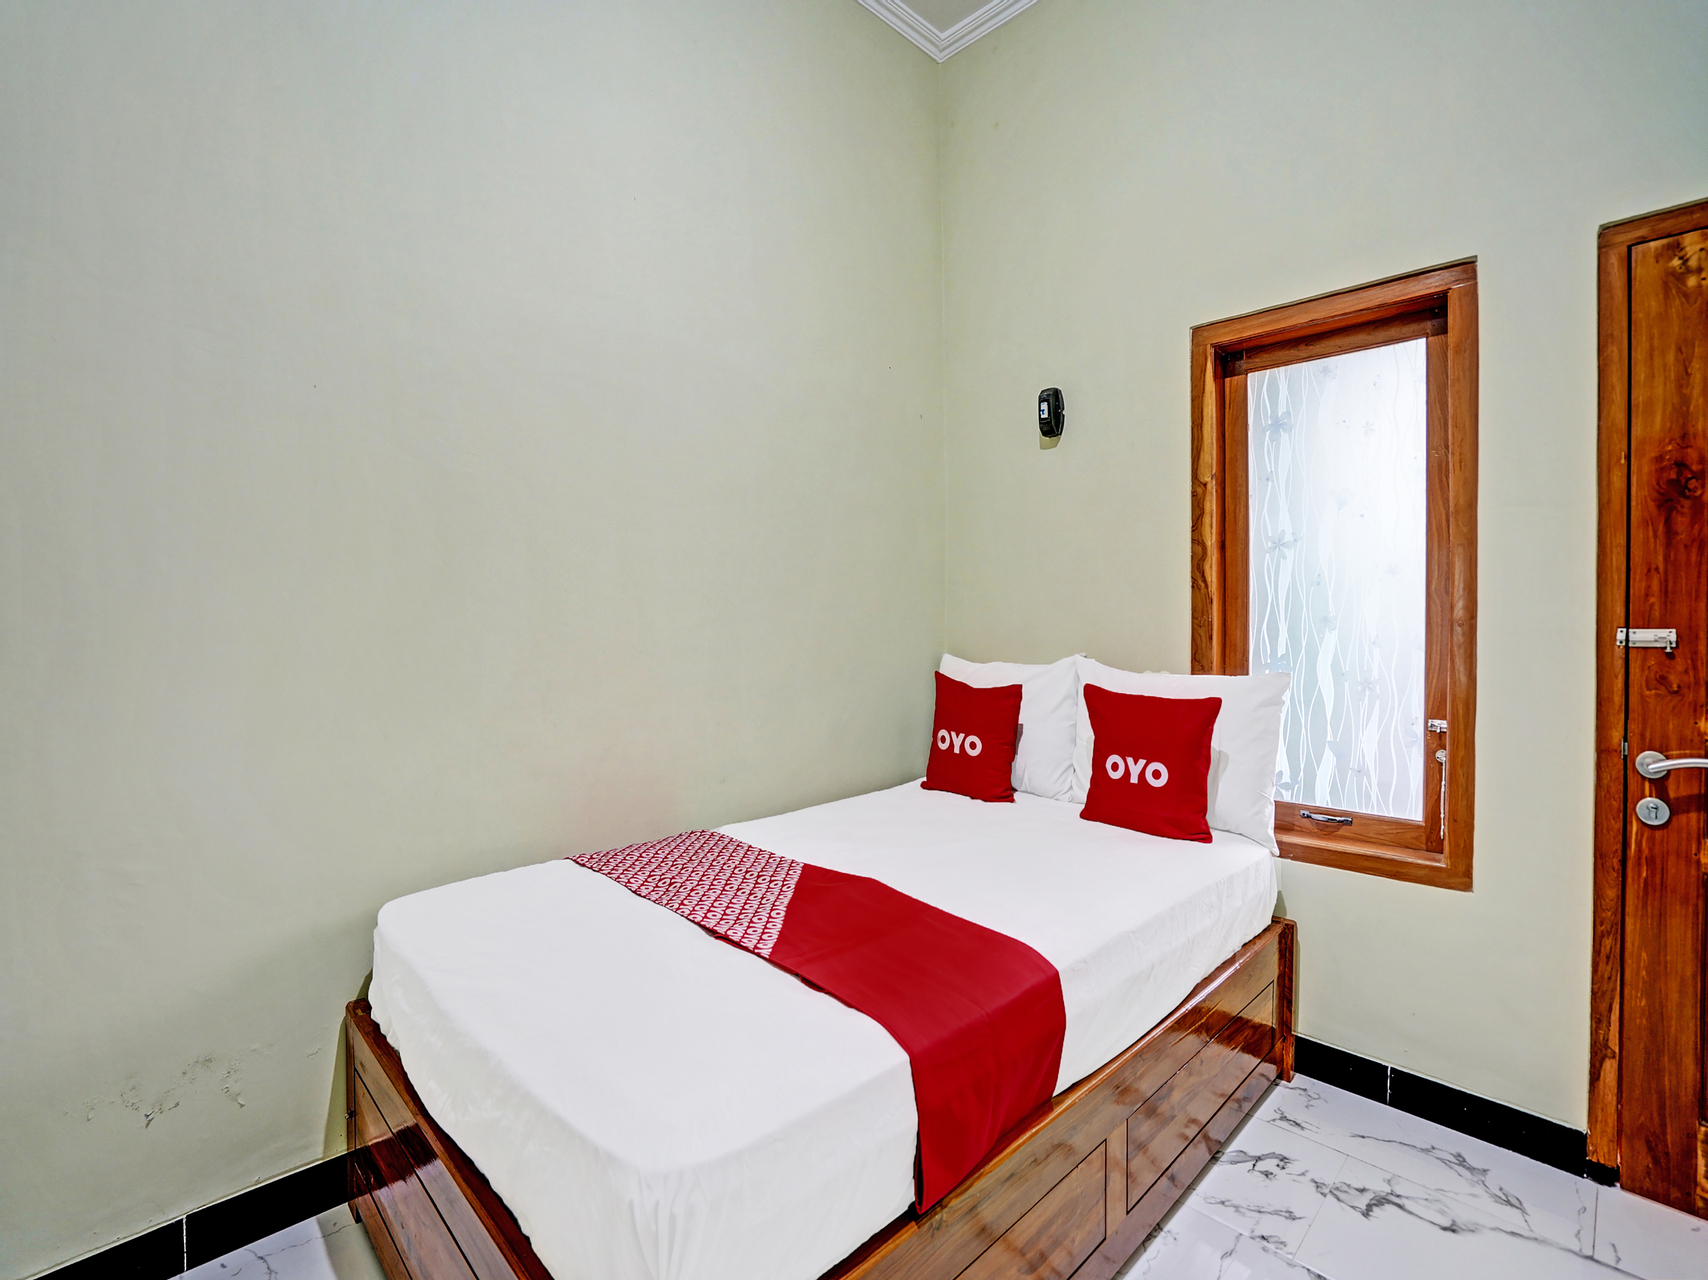 Bedroom 1, OYO 92043 Kost Barokah Syariah Madiun, Madiun